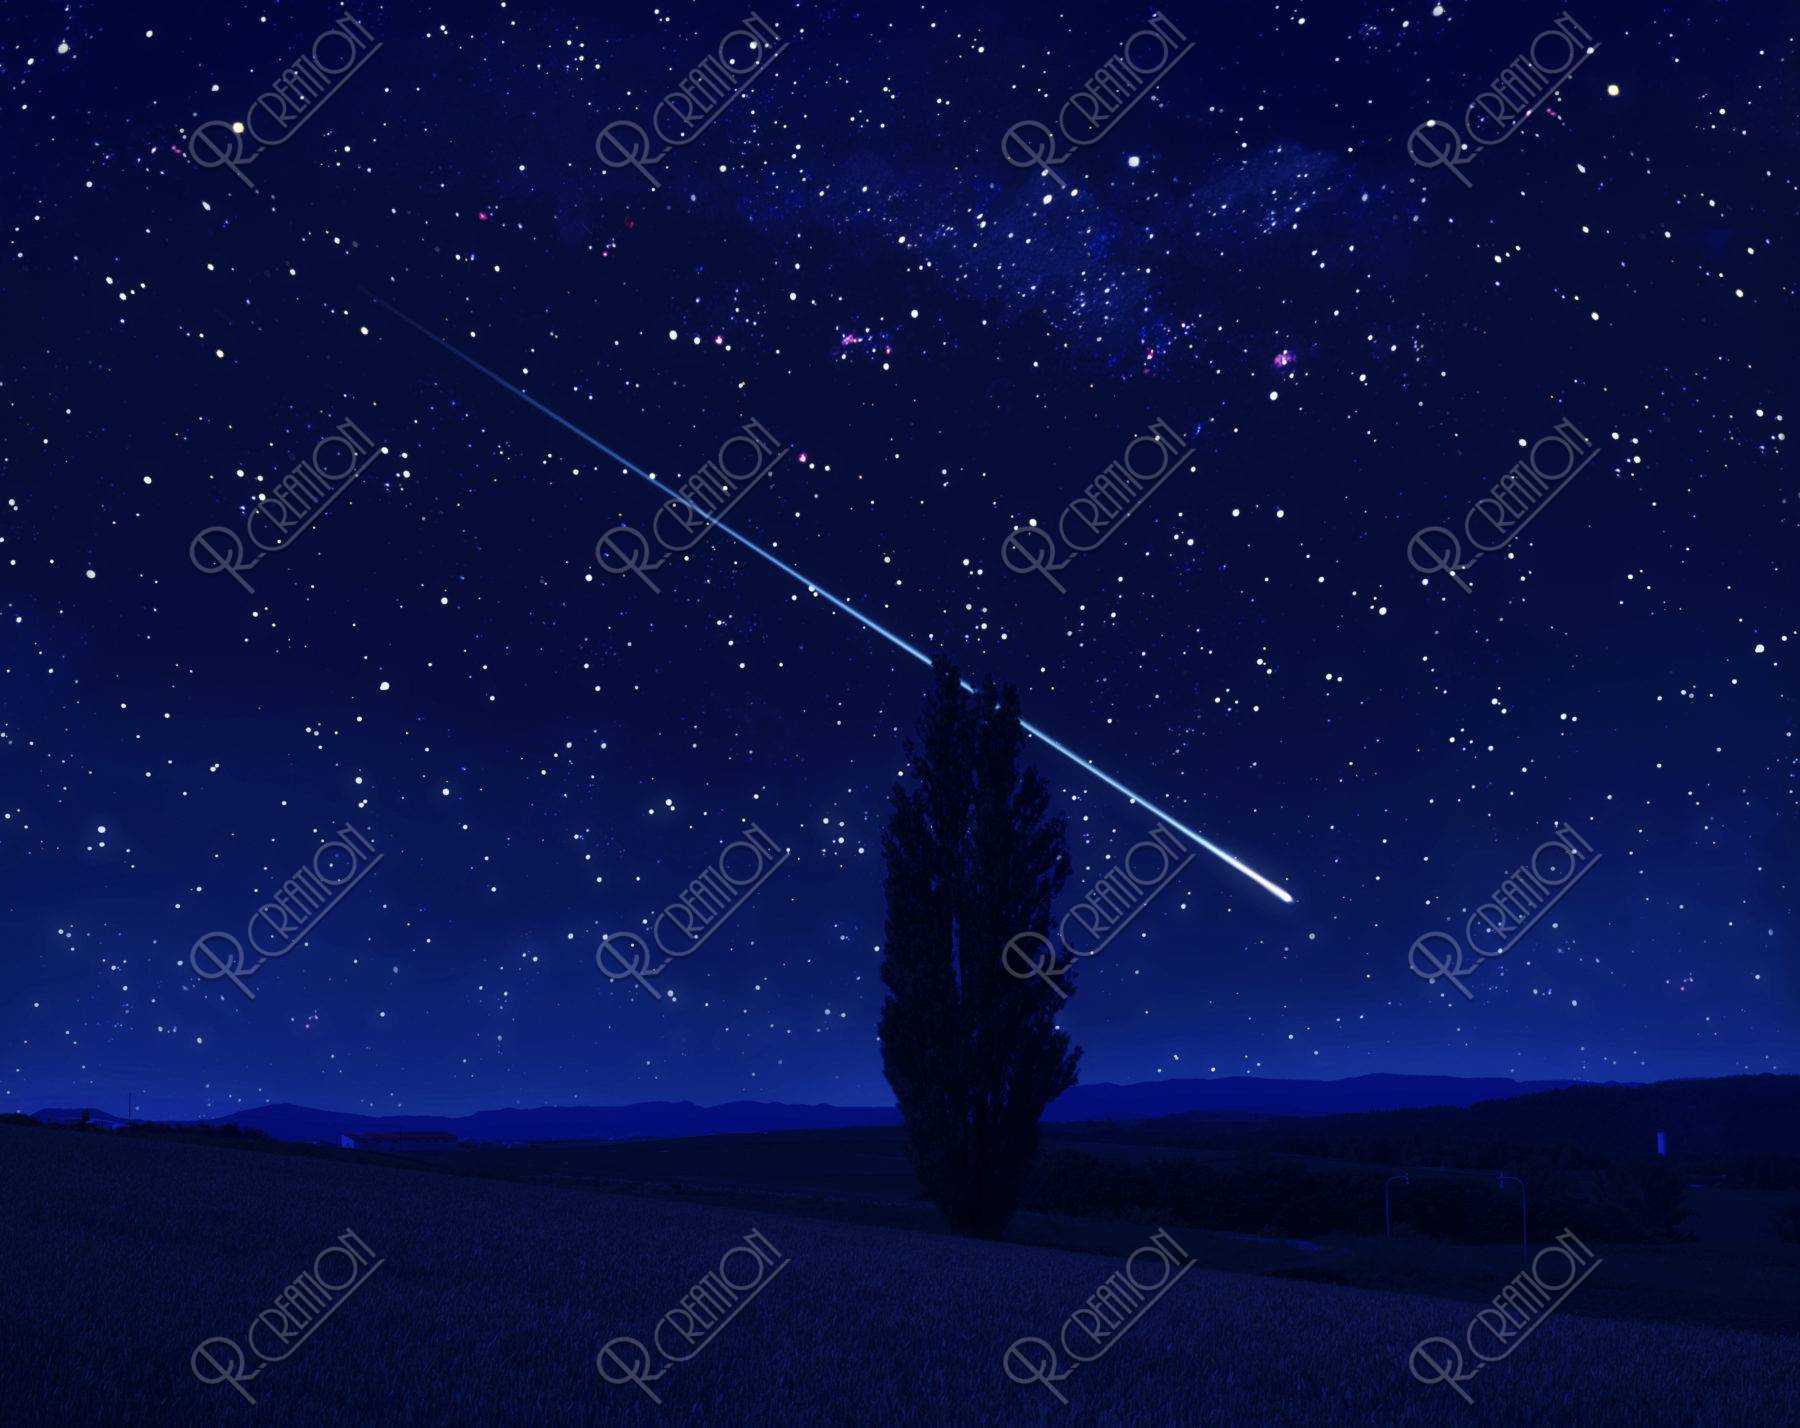 星空 流れ星 夜景 丘 木 合成 イラスト Cg アールクリエーション